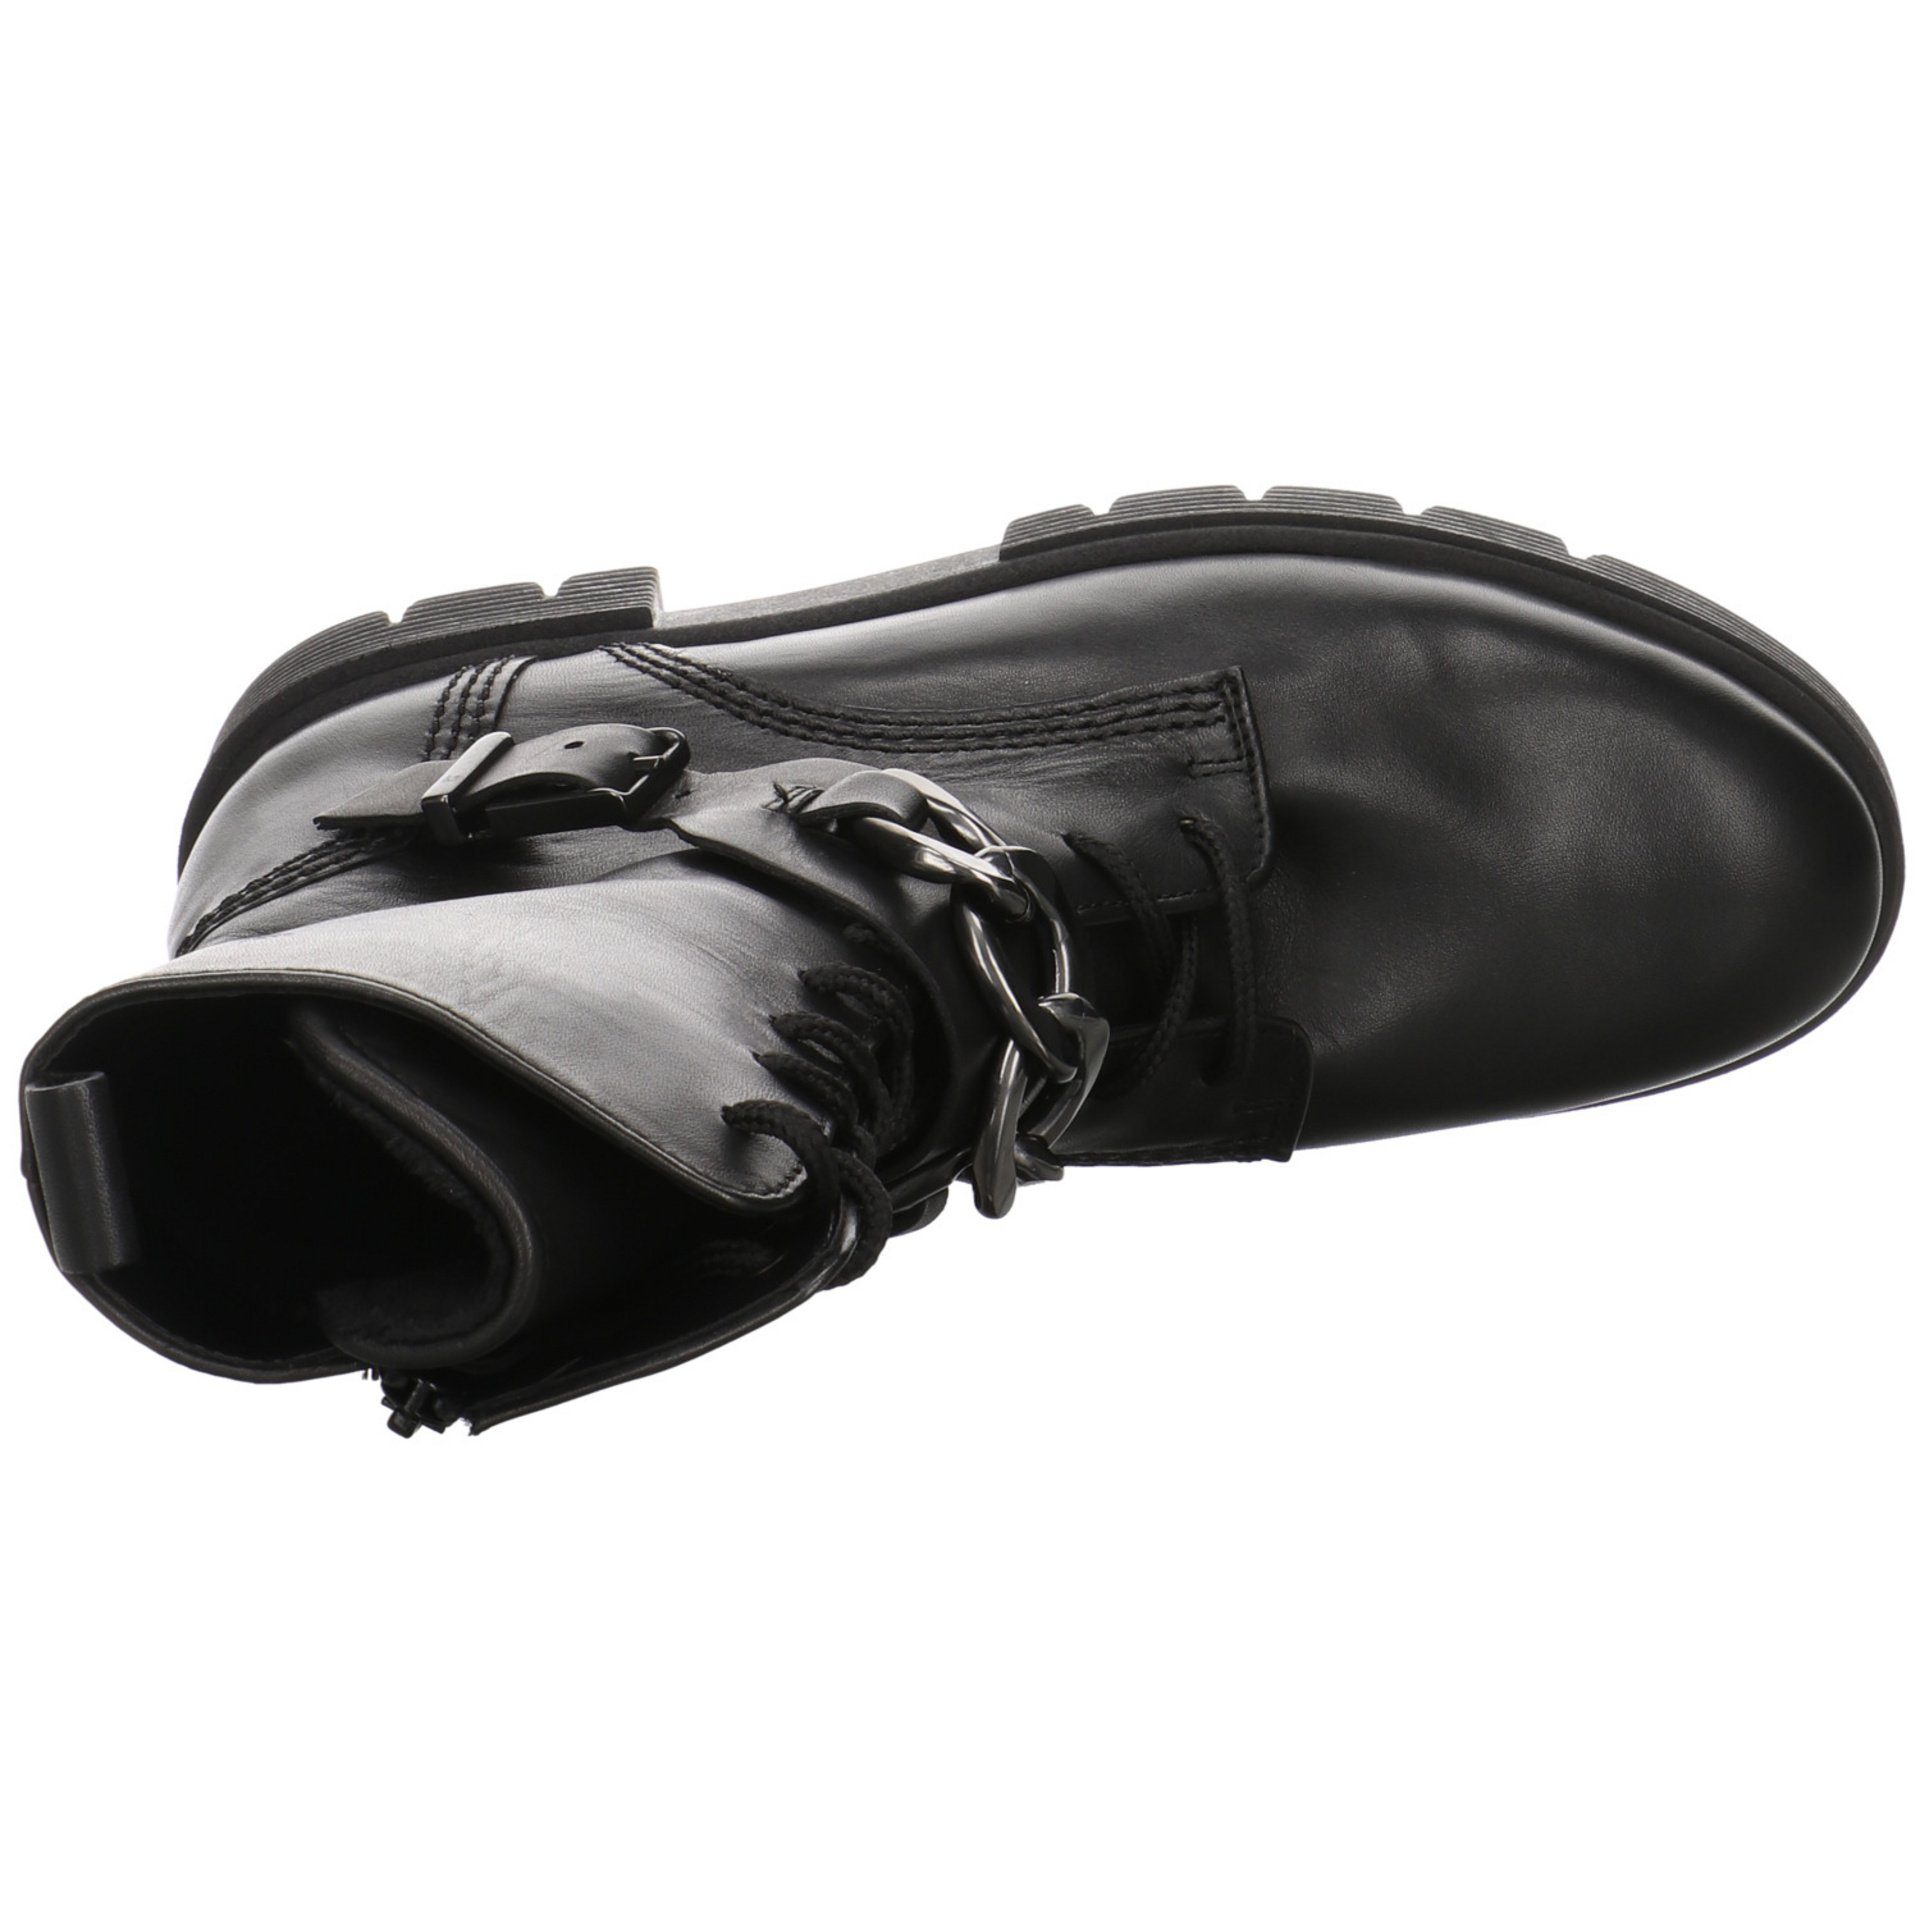 Gabor Damen Stiefel Schuhe Davos Glattleder (Flau/cdf) Elegant Schnürstiefel schwarz Boots Klassisch